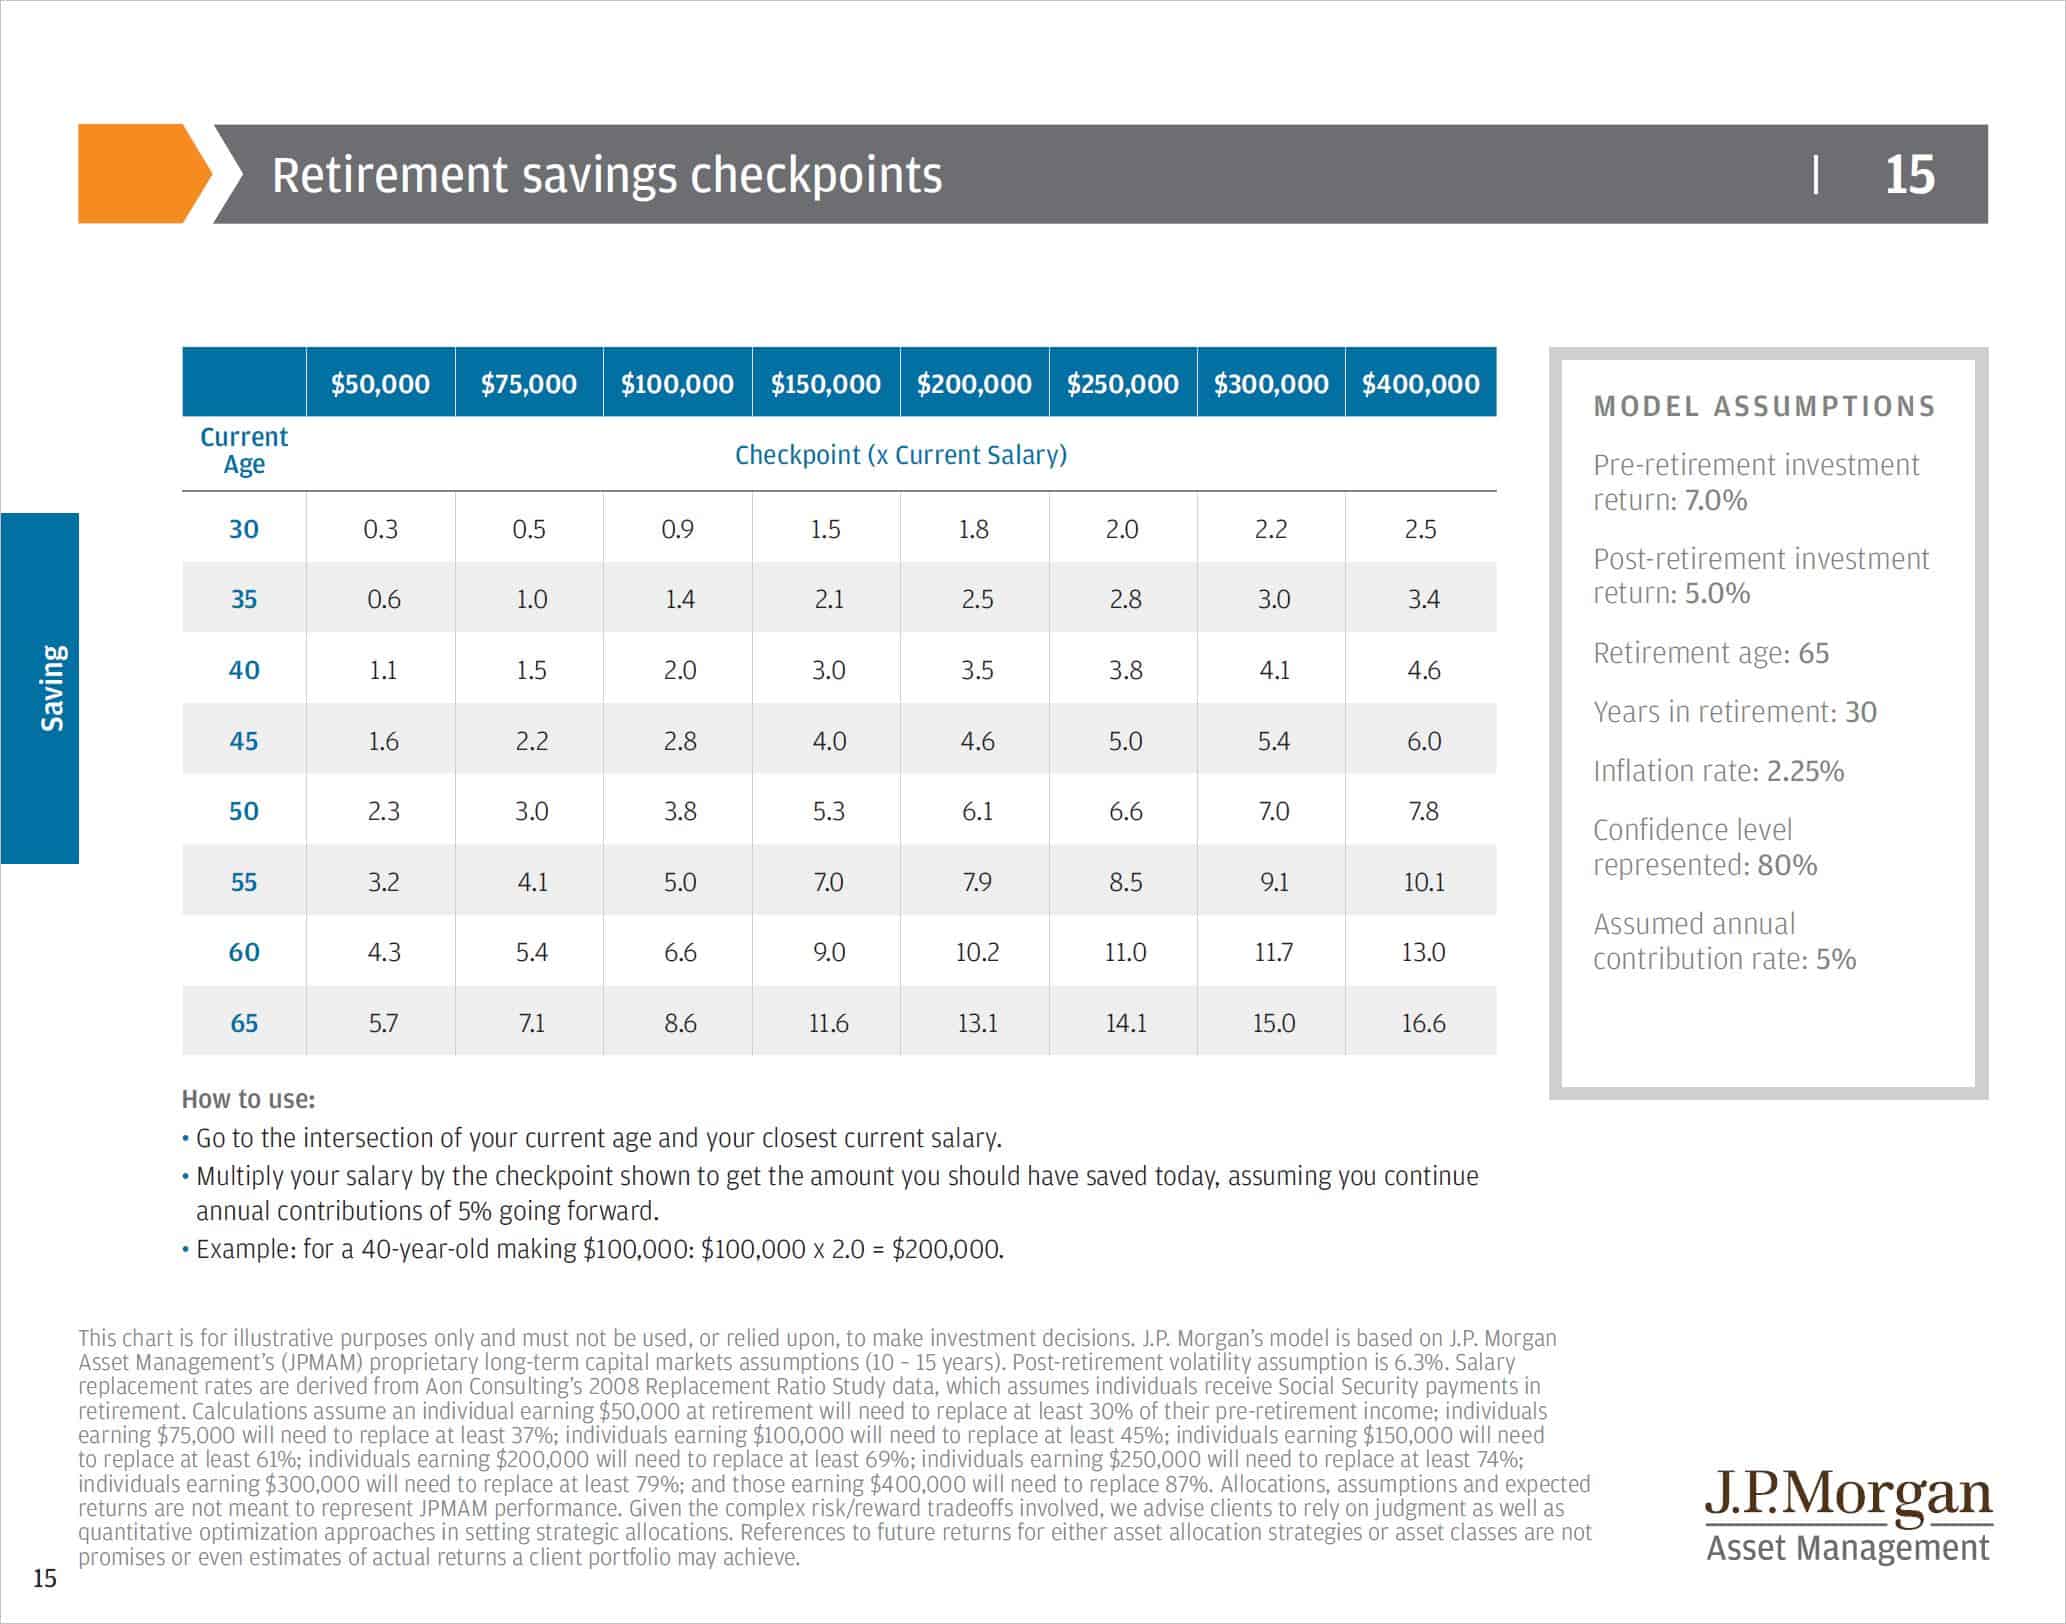 jp morgan - retirement savings